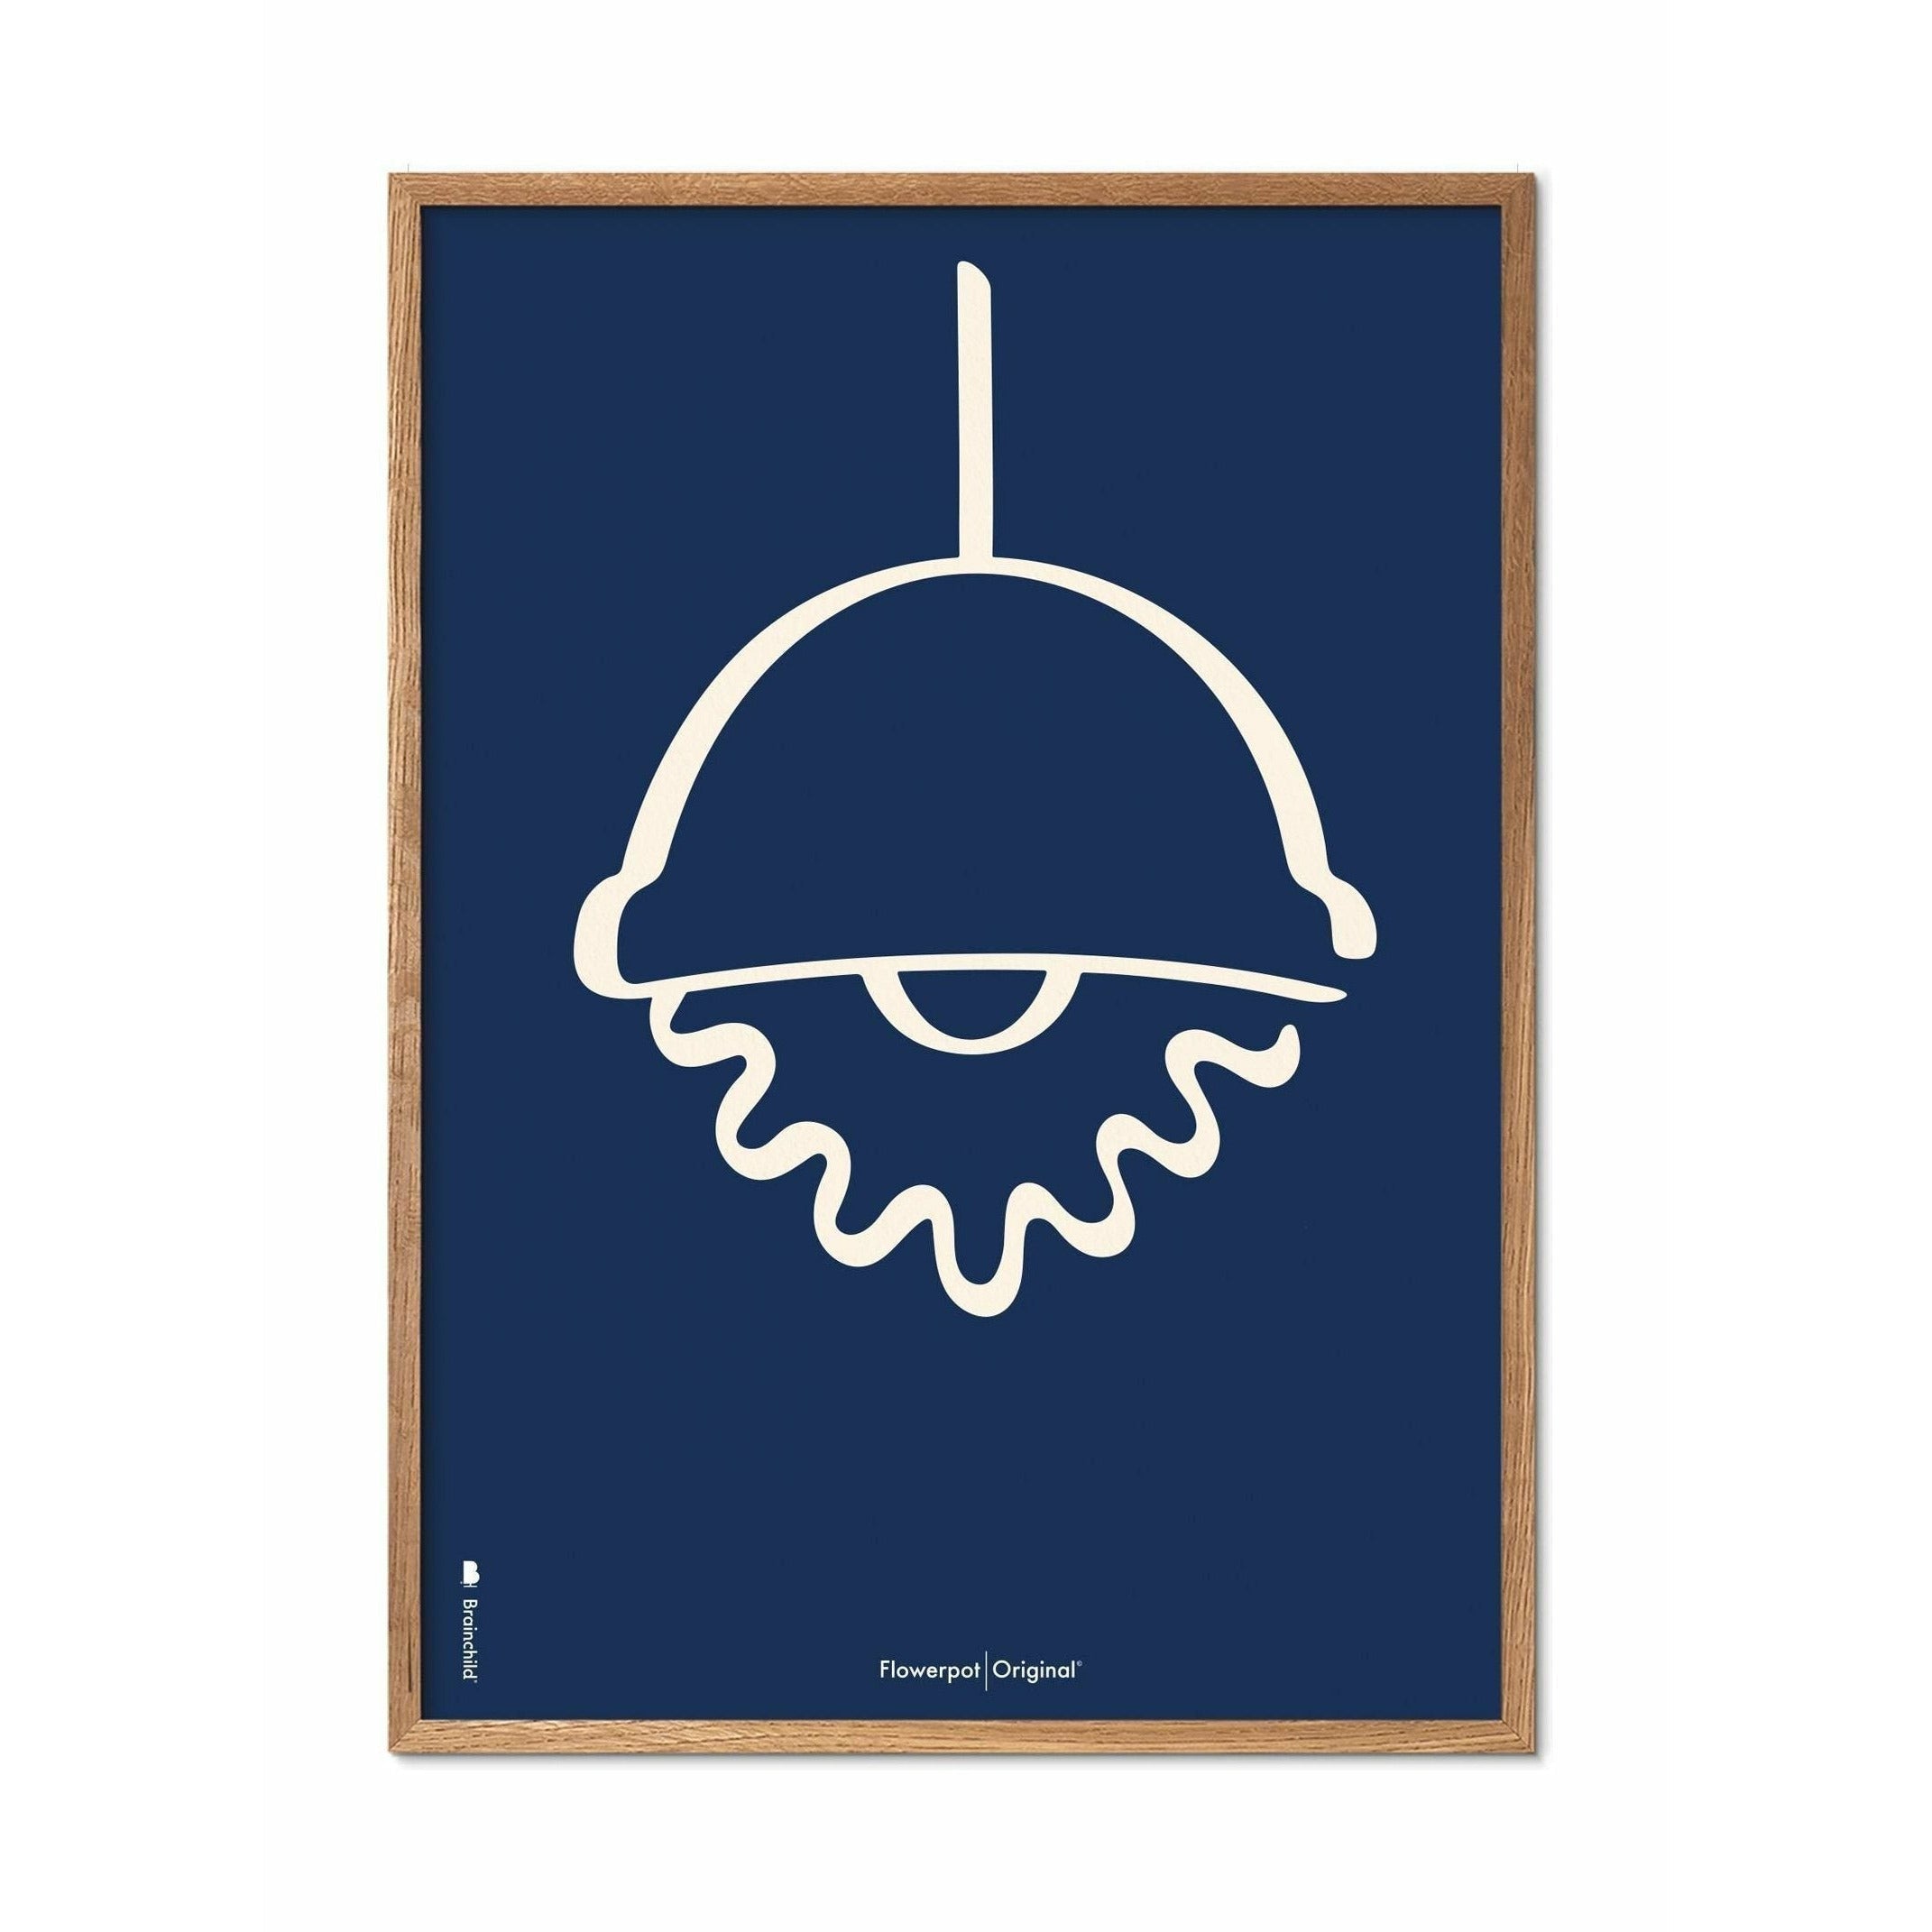 Brainchild Blumentopf Line Poster, Rahmen aus hellem Holz 70x100 Cm, blauer Hintergrund